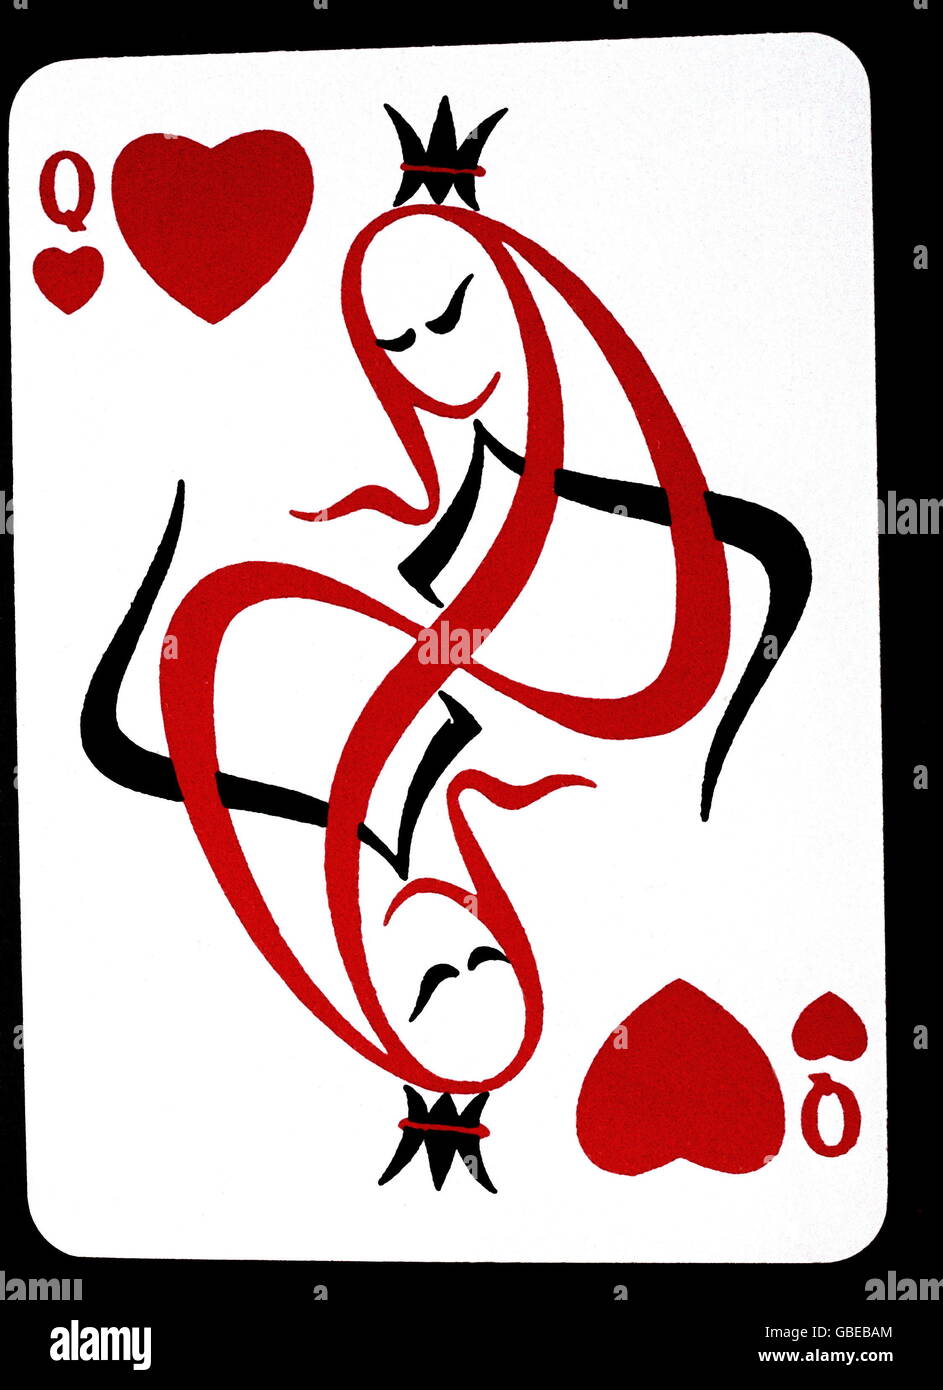 Jeux, jeu de cartes, carte française, reine des coeurs, 1957, droits additionnels-Clearences-non disponible Banque D'Images